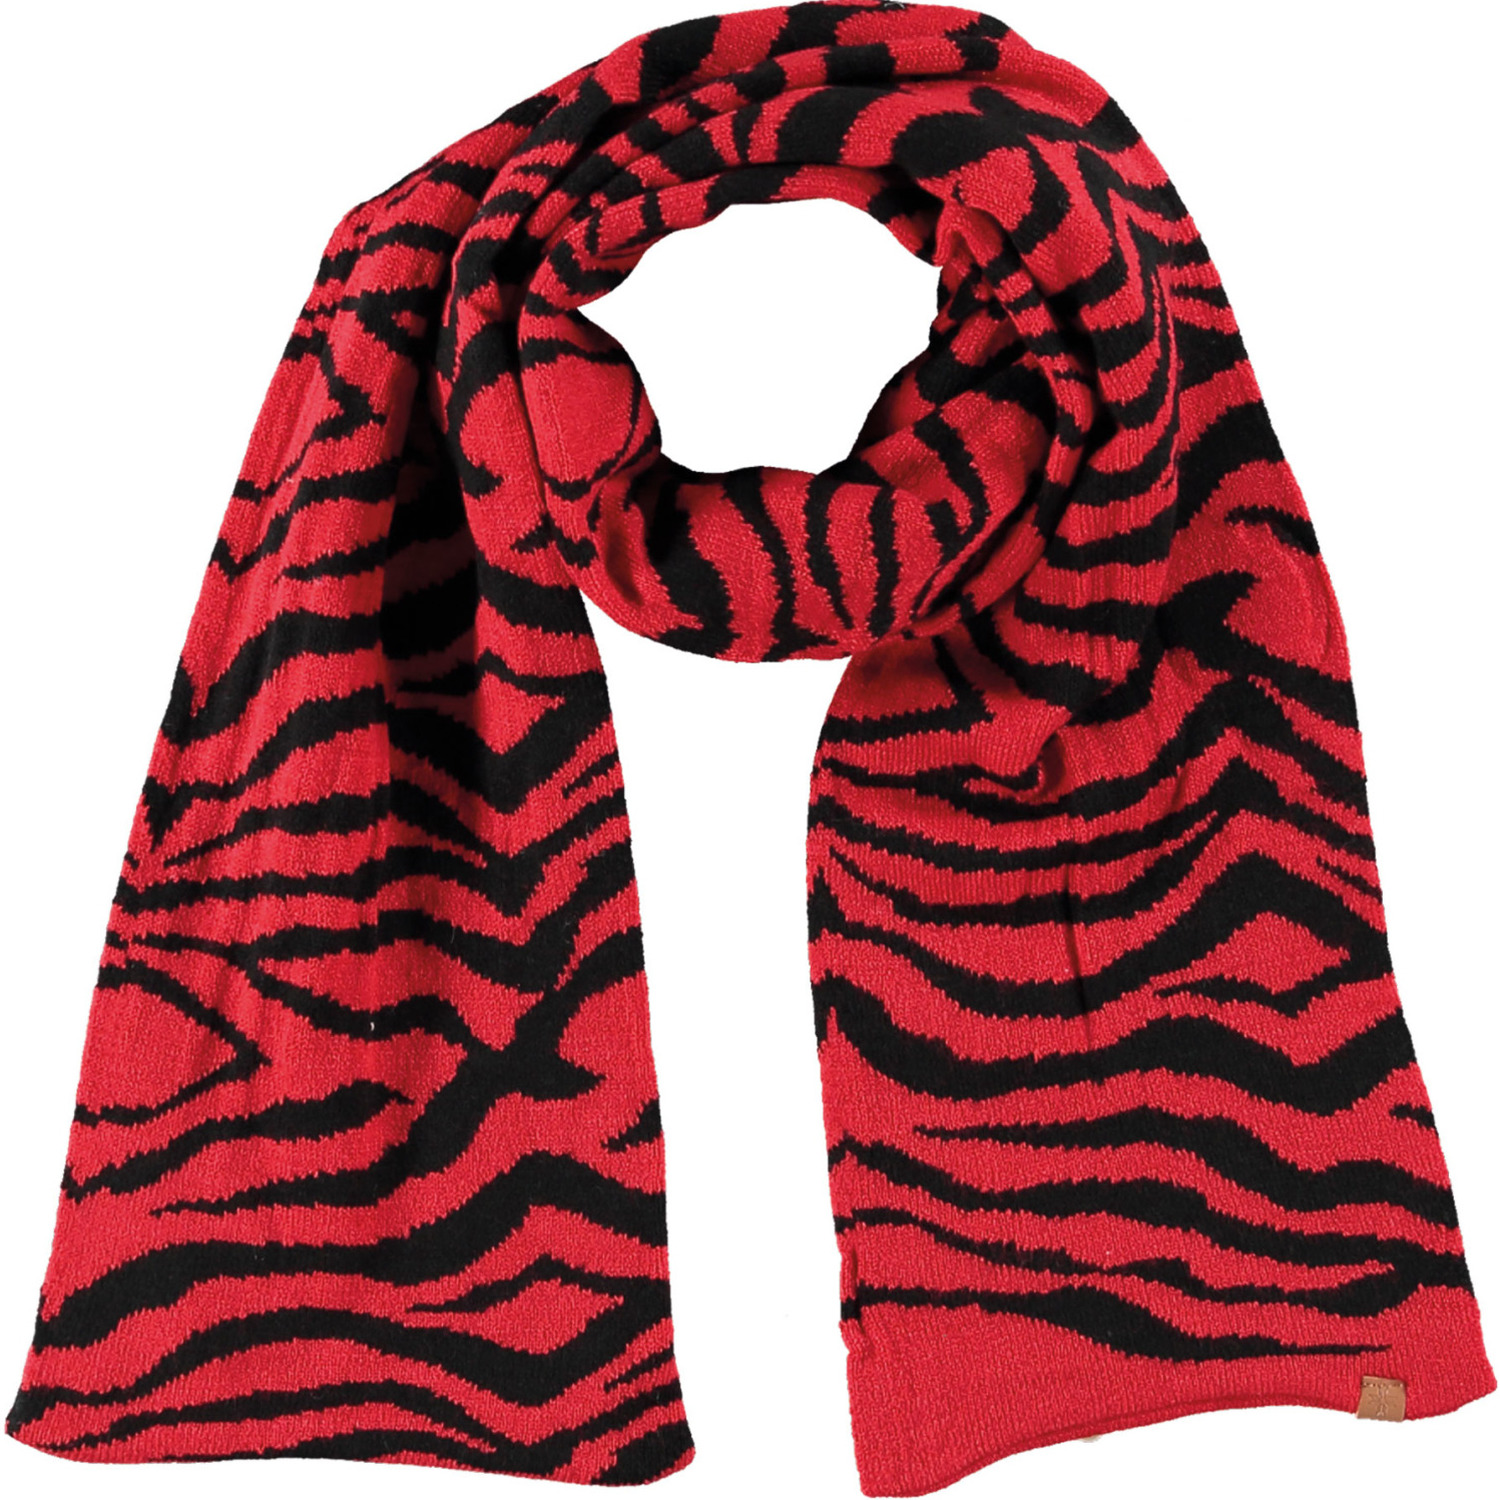 fluiten Pa Theoretisch Rode/zwarte tijger/zebra strepen patroon sjaal/shawl voor meisjes bestellen  voor € 11.99 bij het Knuffelparadijs